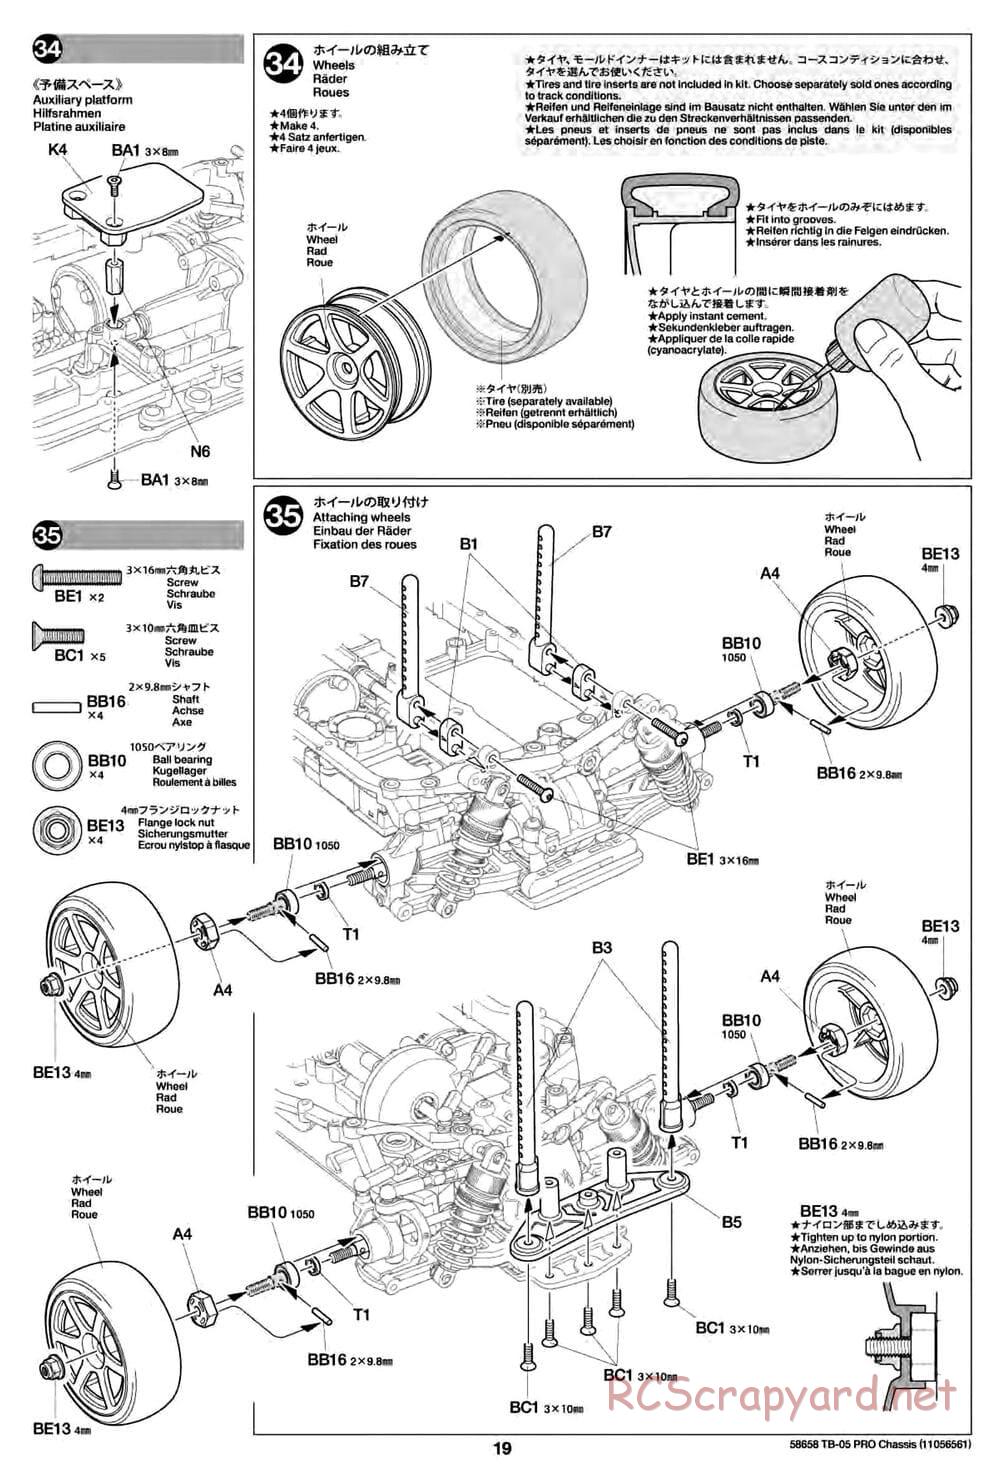 Tamiya - TB-05 Pro Chassis - Manual - Page 19